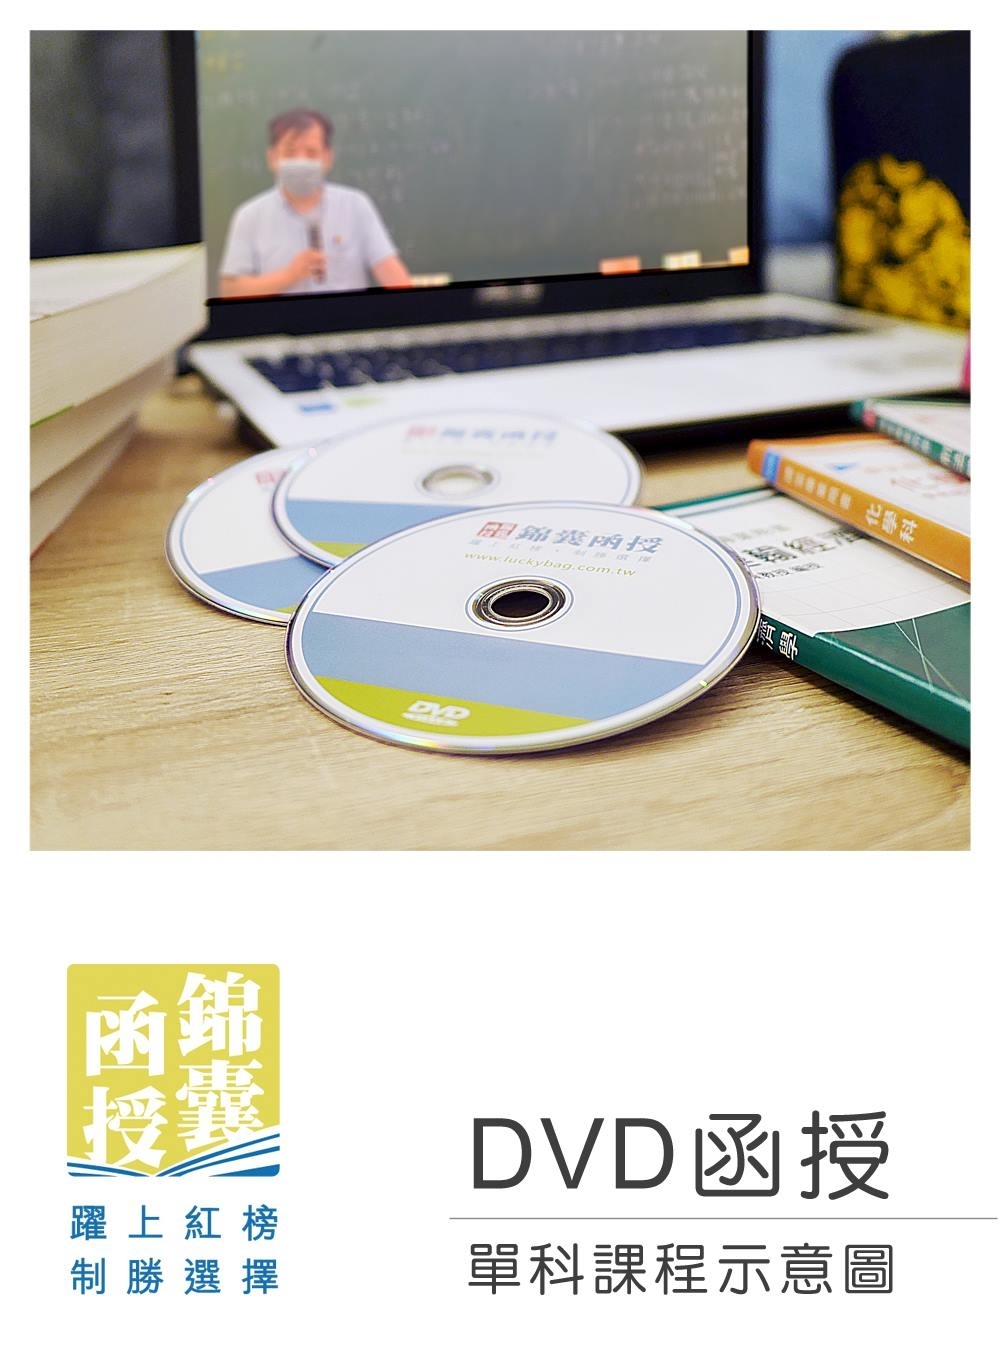 【DVD函授】行政學(適用初等/各類五等/國營)-單科課程(111版)